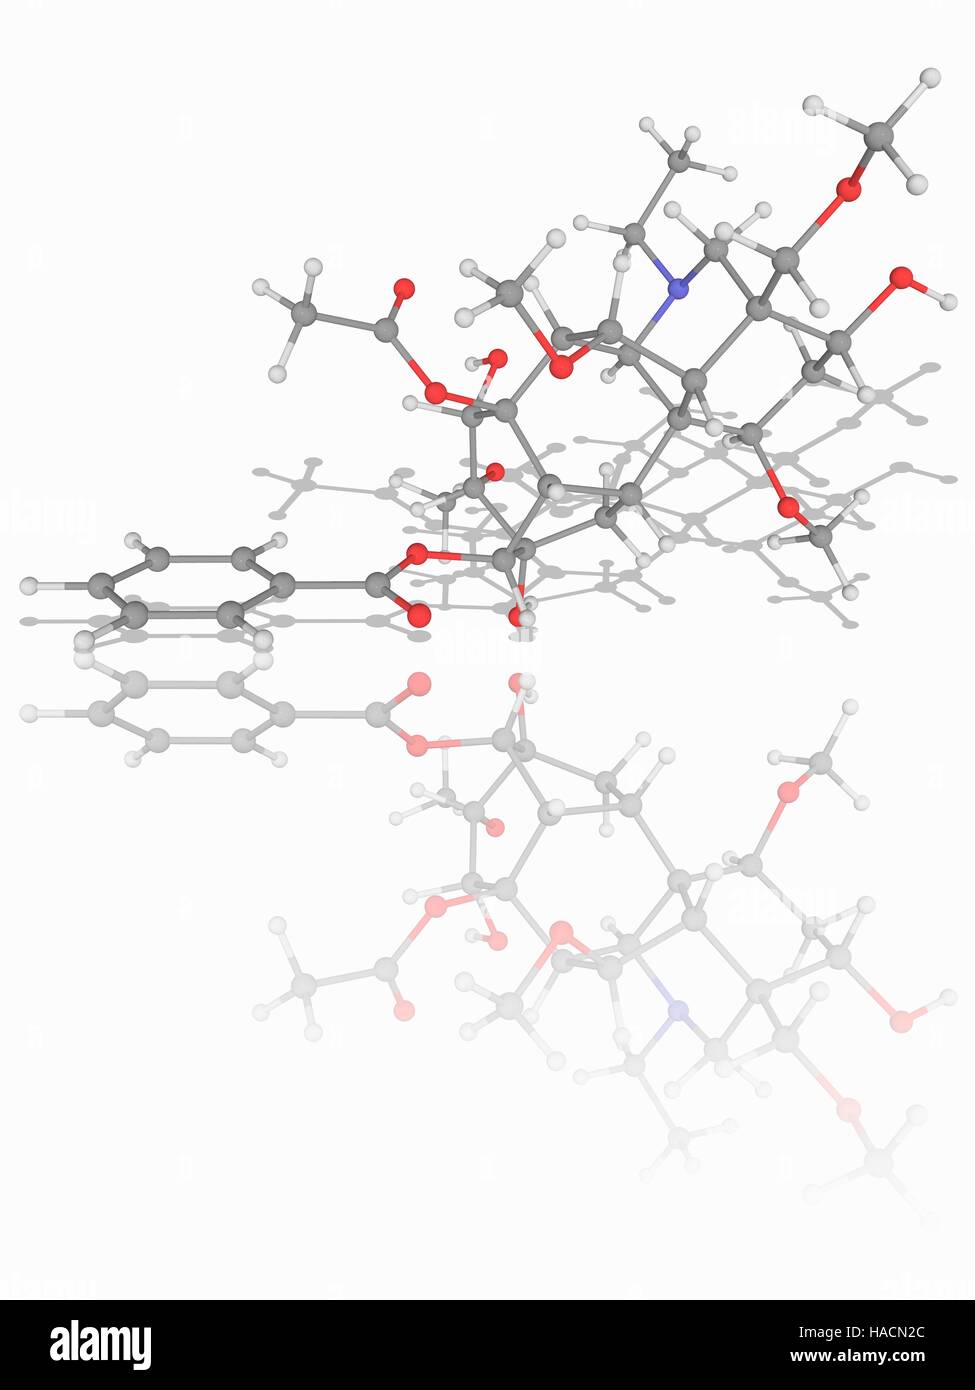 Aconitine. Molekülmodell tödliche Nervengift Aconitine (C34. H47. N.O11). Diese Chemikalie wird durch Aconitum Pflanzen erzeugt. Atome als Kugeln dargestellt werden und sind farblich gekennzeichnet: Kohlenstoff (grau), Wasserstoff (weiß), Stickstoff (blau) und Sauerstoff (rot). Abbildung. Stockfoto